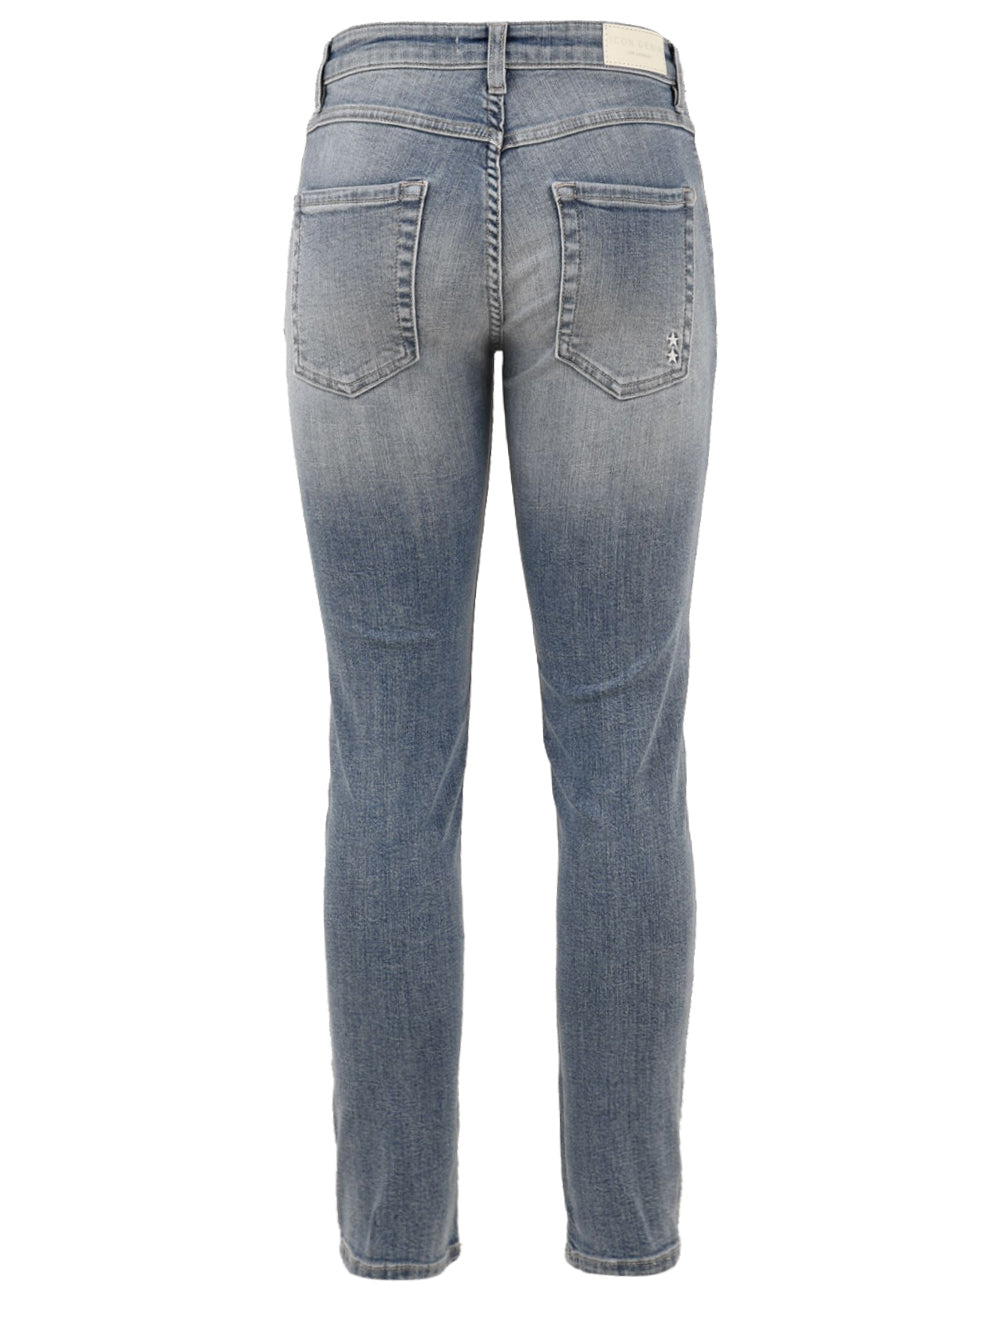 Immagine retro  del jeans skinny modello Kylie da donna,in azzurro modello aderente con passanti per cintura e tasche.